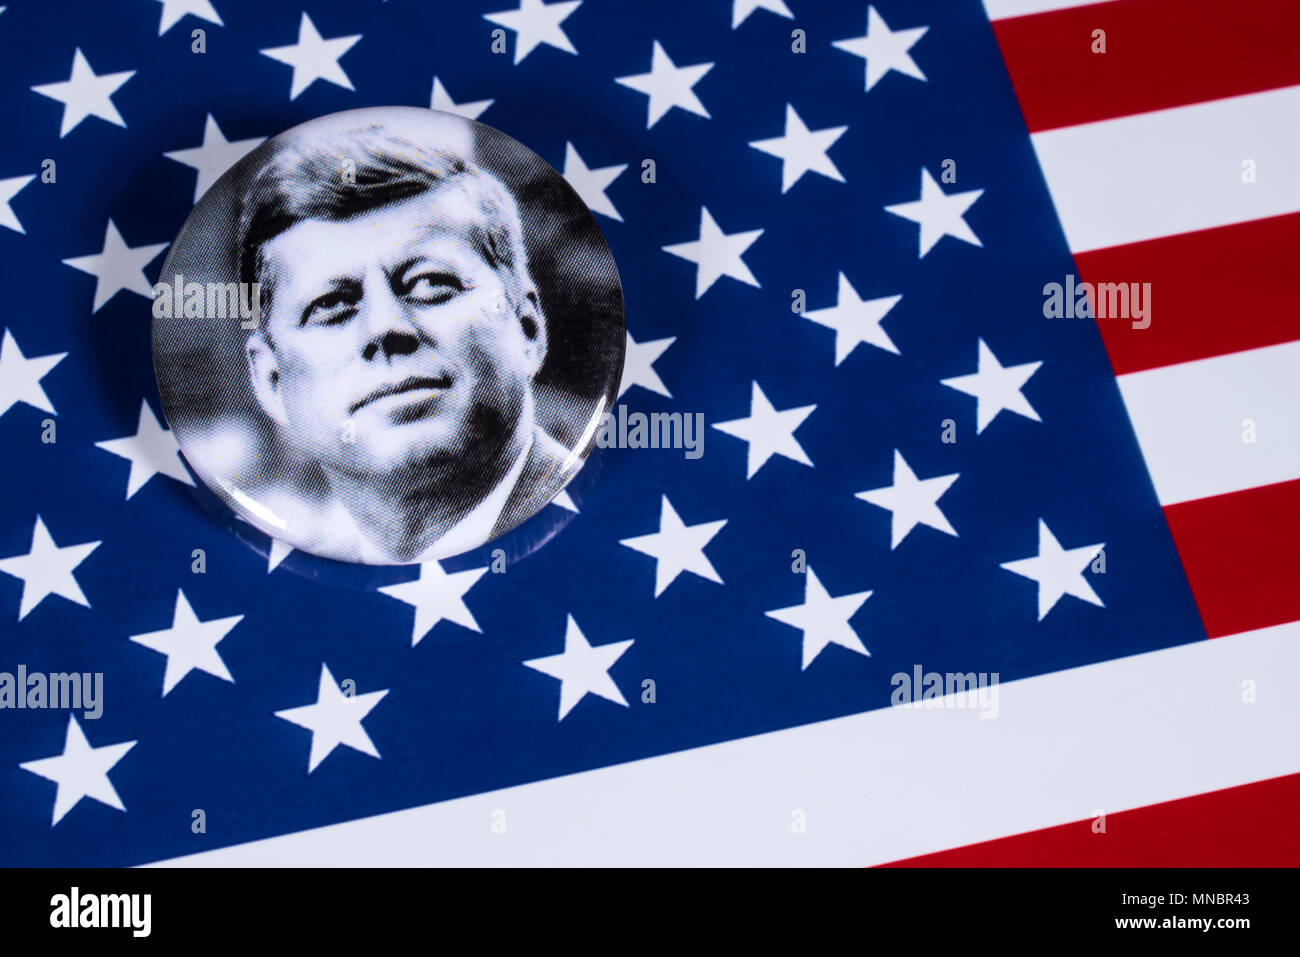 Londres, Royaume-Uni - 27 avril 2018 : un badge John F. Kennedy illustré sur les USA drapeau, le 27 avril 2018. John F Kennedy a été le 35e Président de l'ONU Banque D'Images